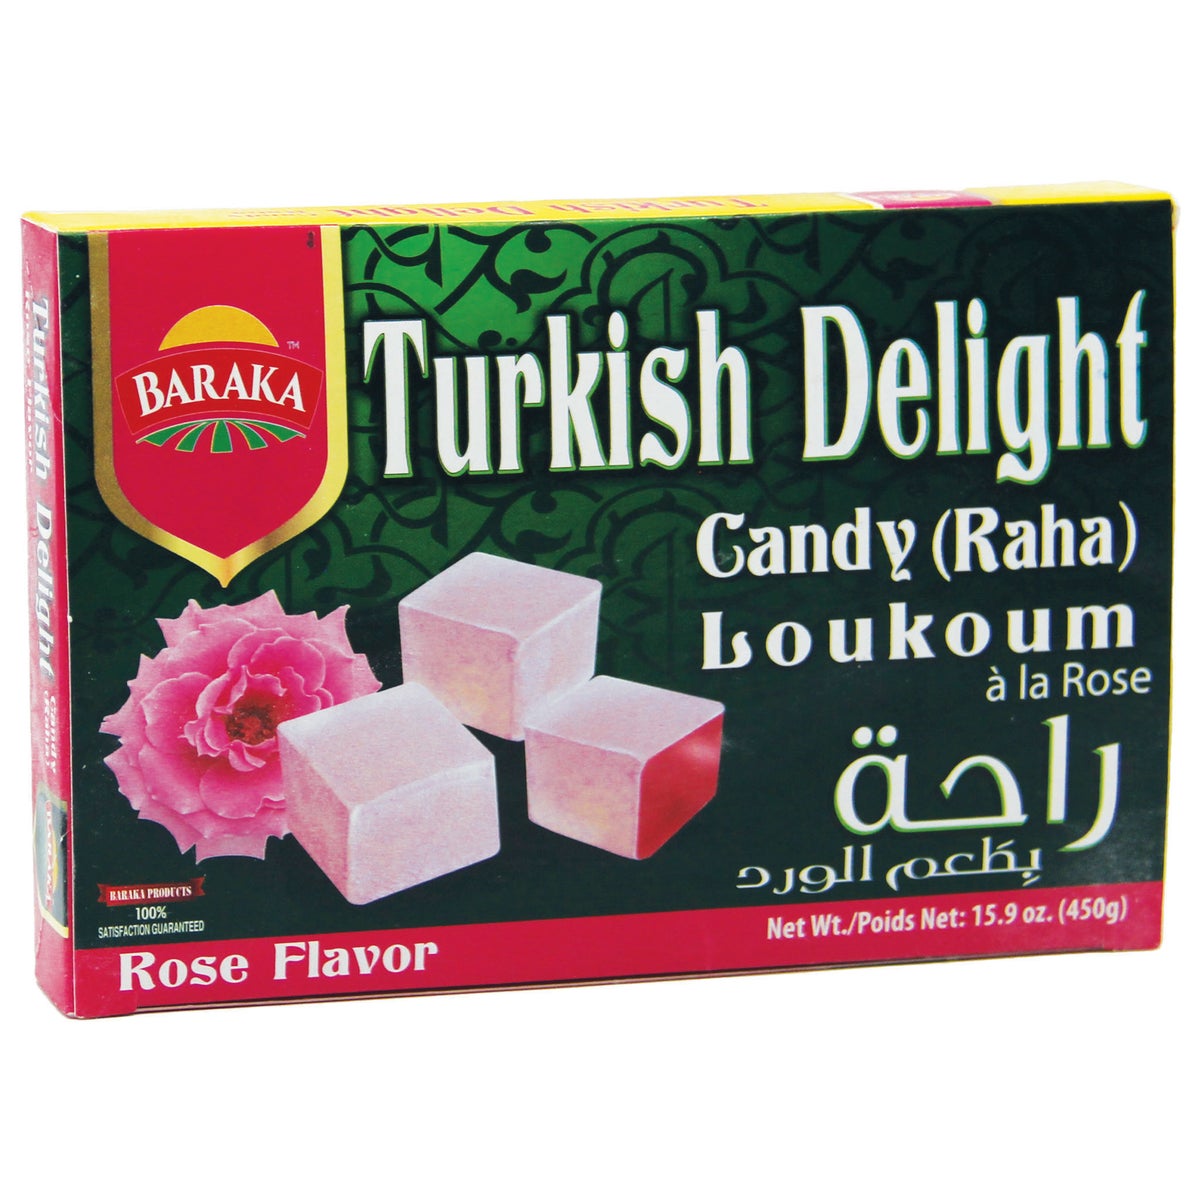 Rose Flavor Turkish Delights Raha "Baraka" 450 g x